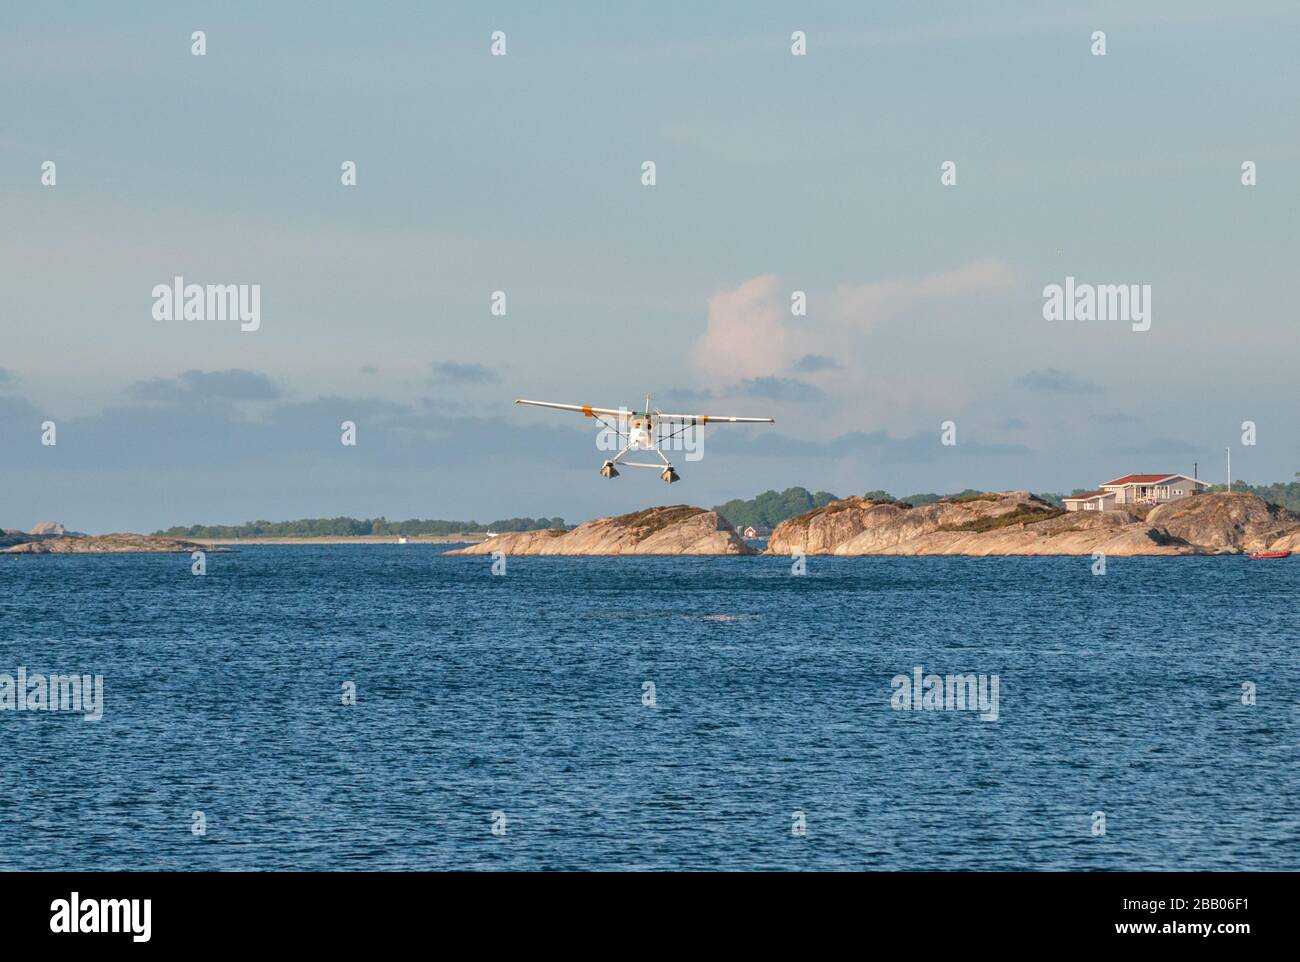 Un hydravion Cessna 172 Skyhawk jaune et blanc qui s'envole parmi les îles de l'archipel de Kragerø, sur la côte sud de la Norvège. Banque D'Images